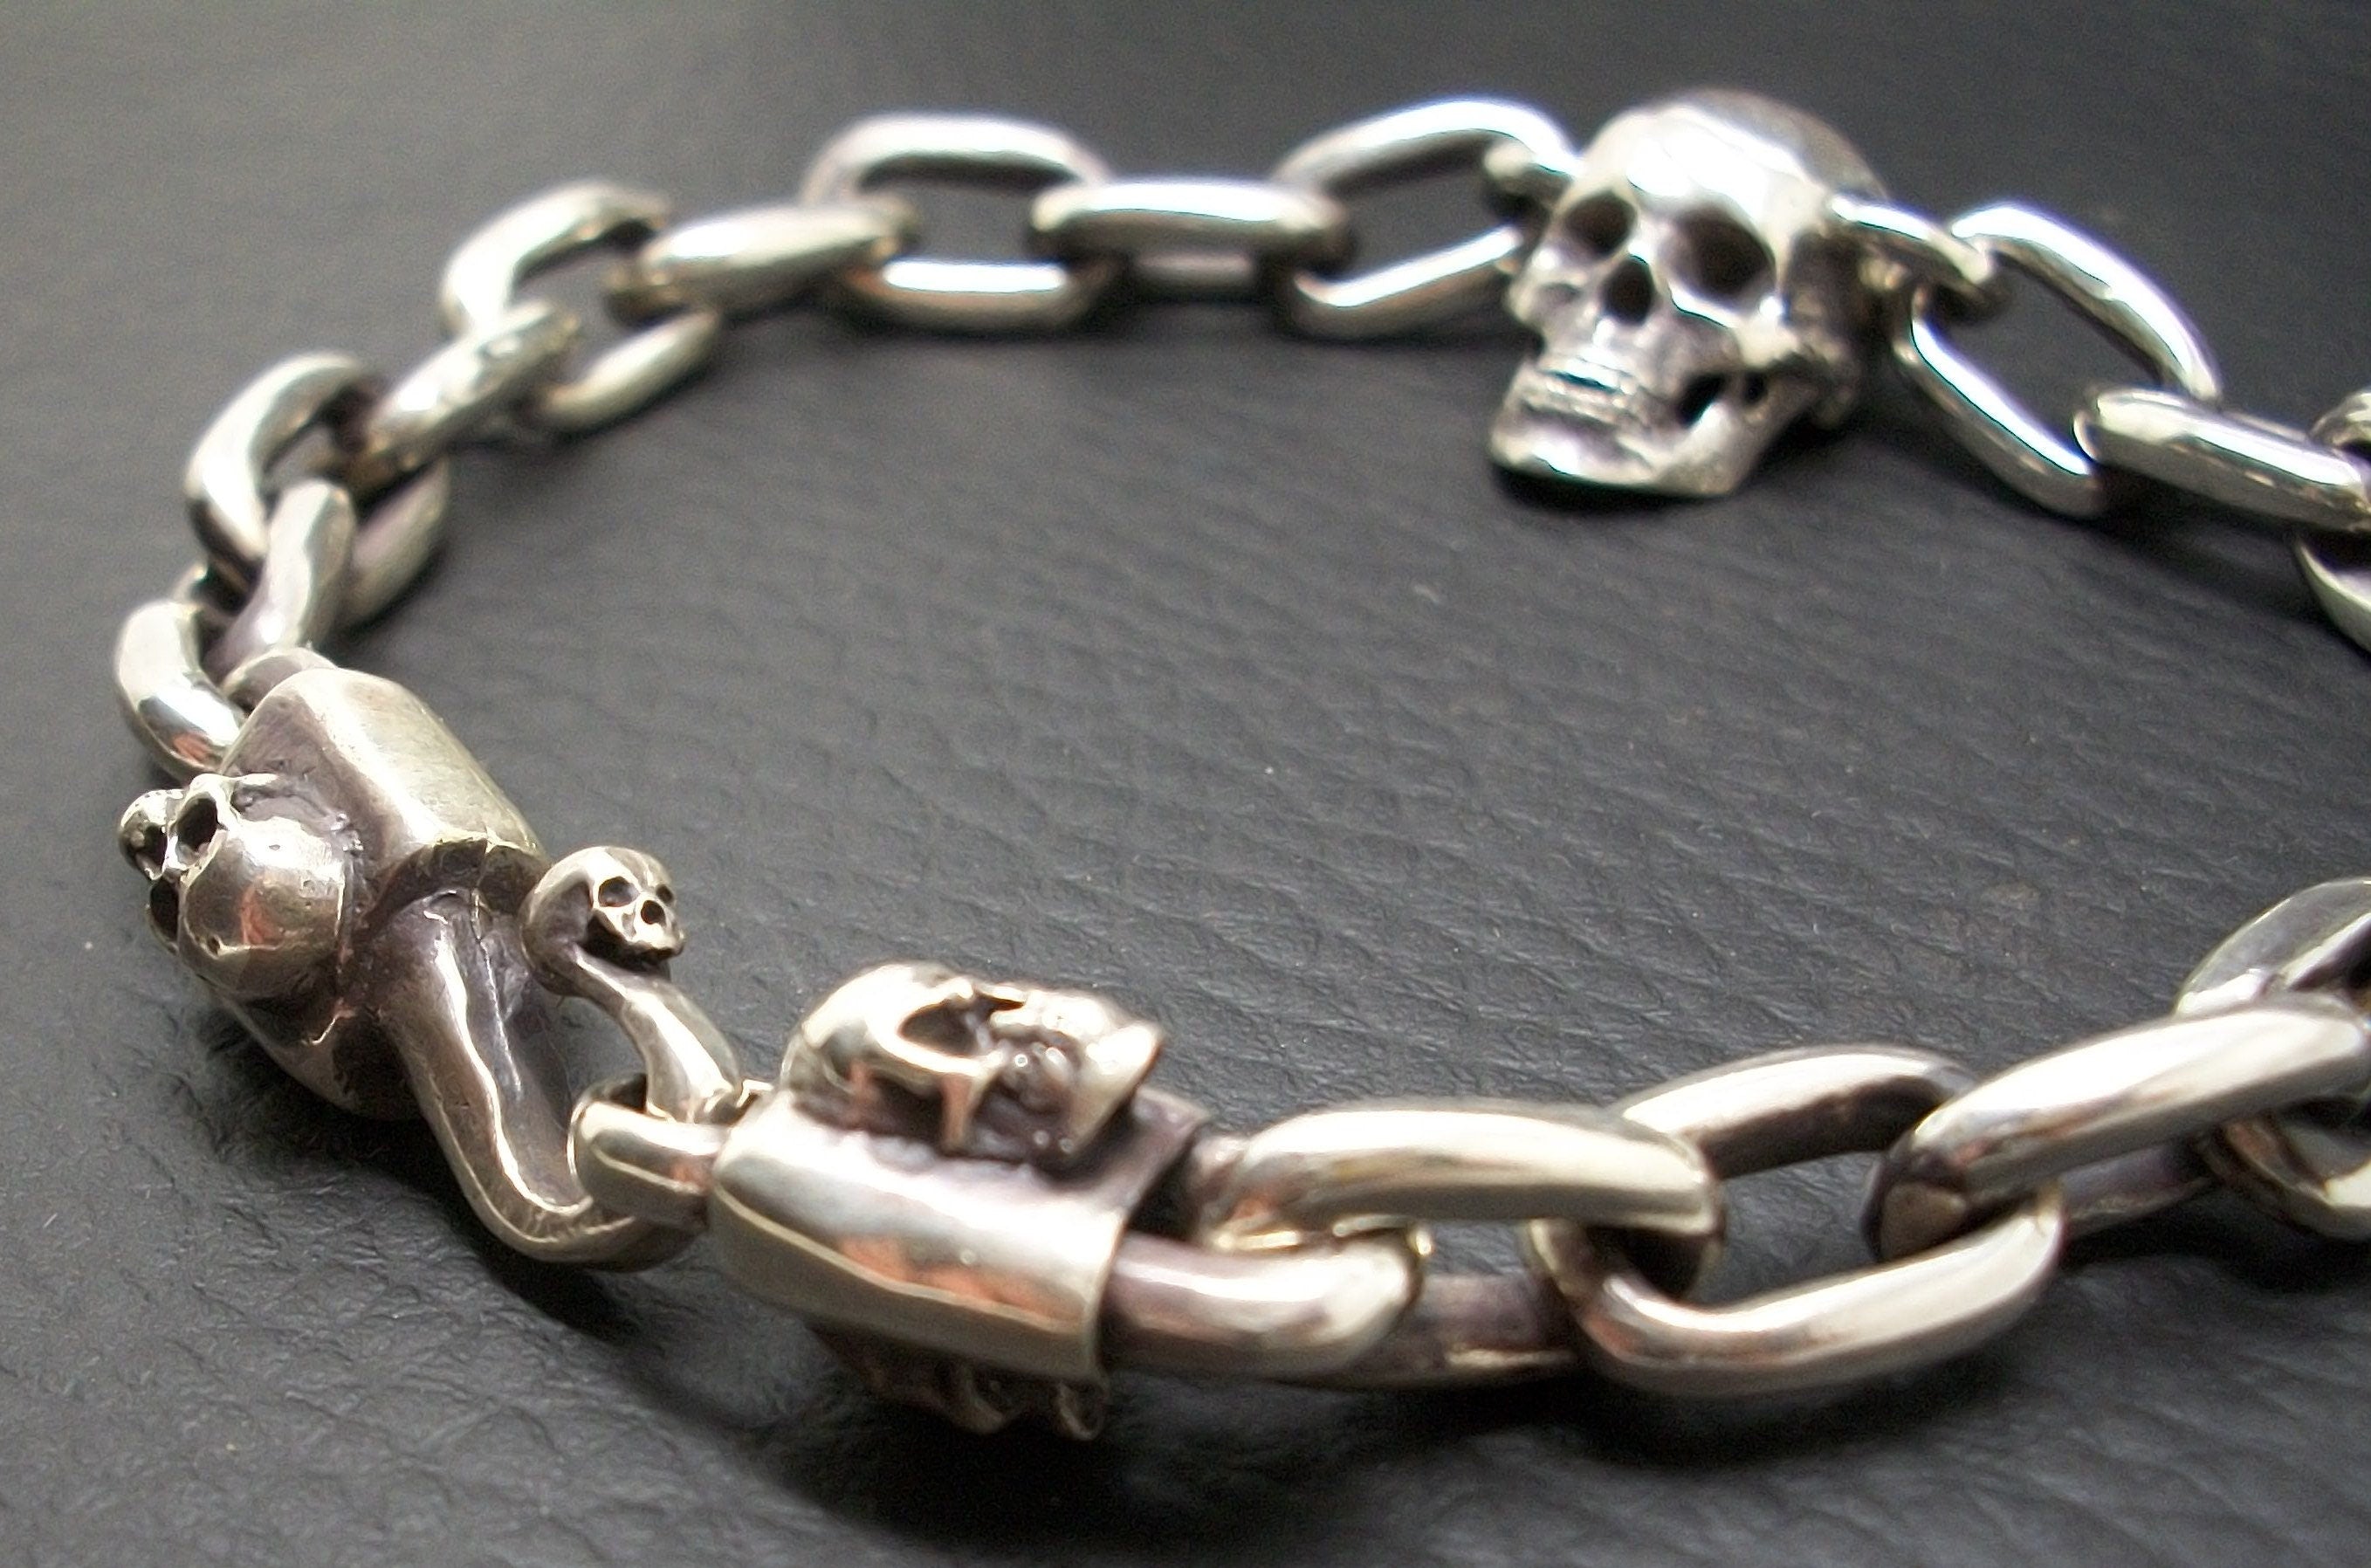 Skull Bracelet - Sterling Silver Skull Bracelet Oval chain. Hook closure